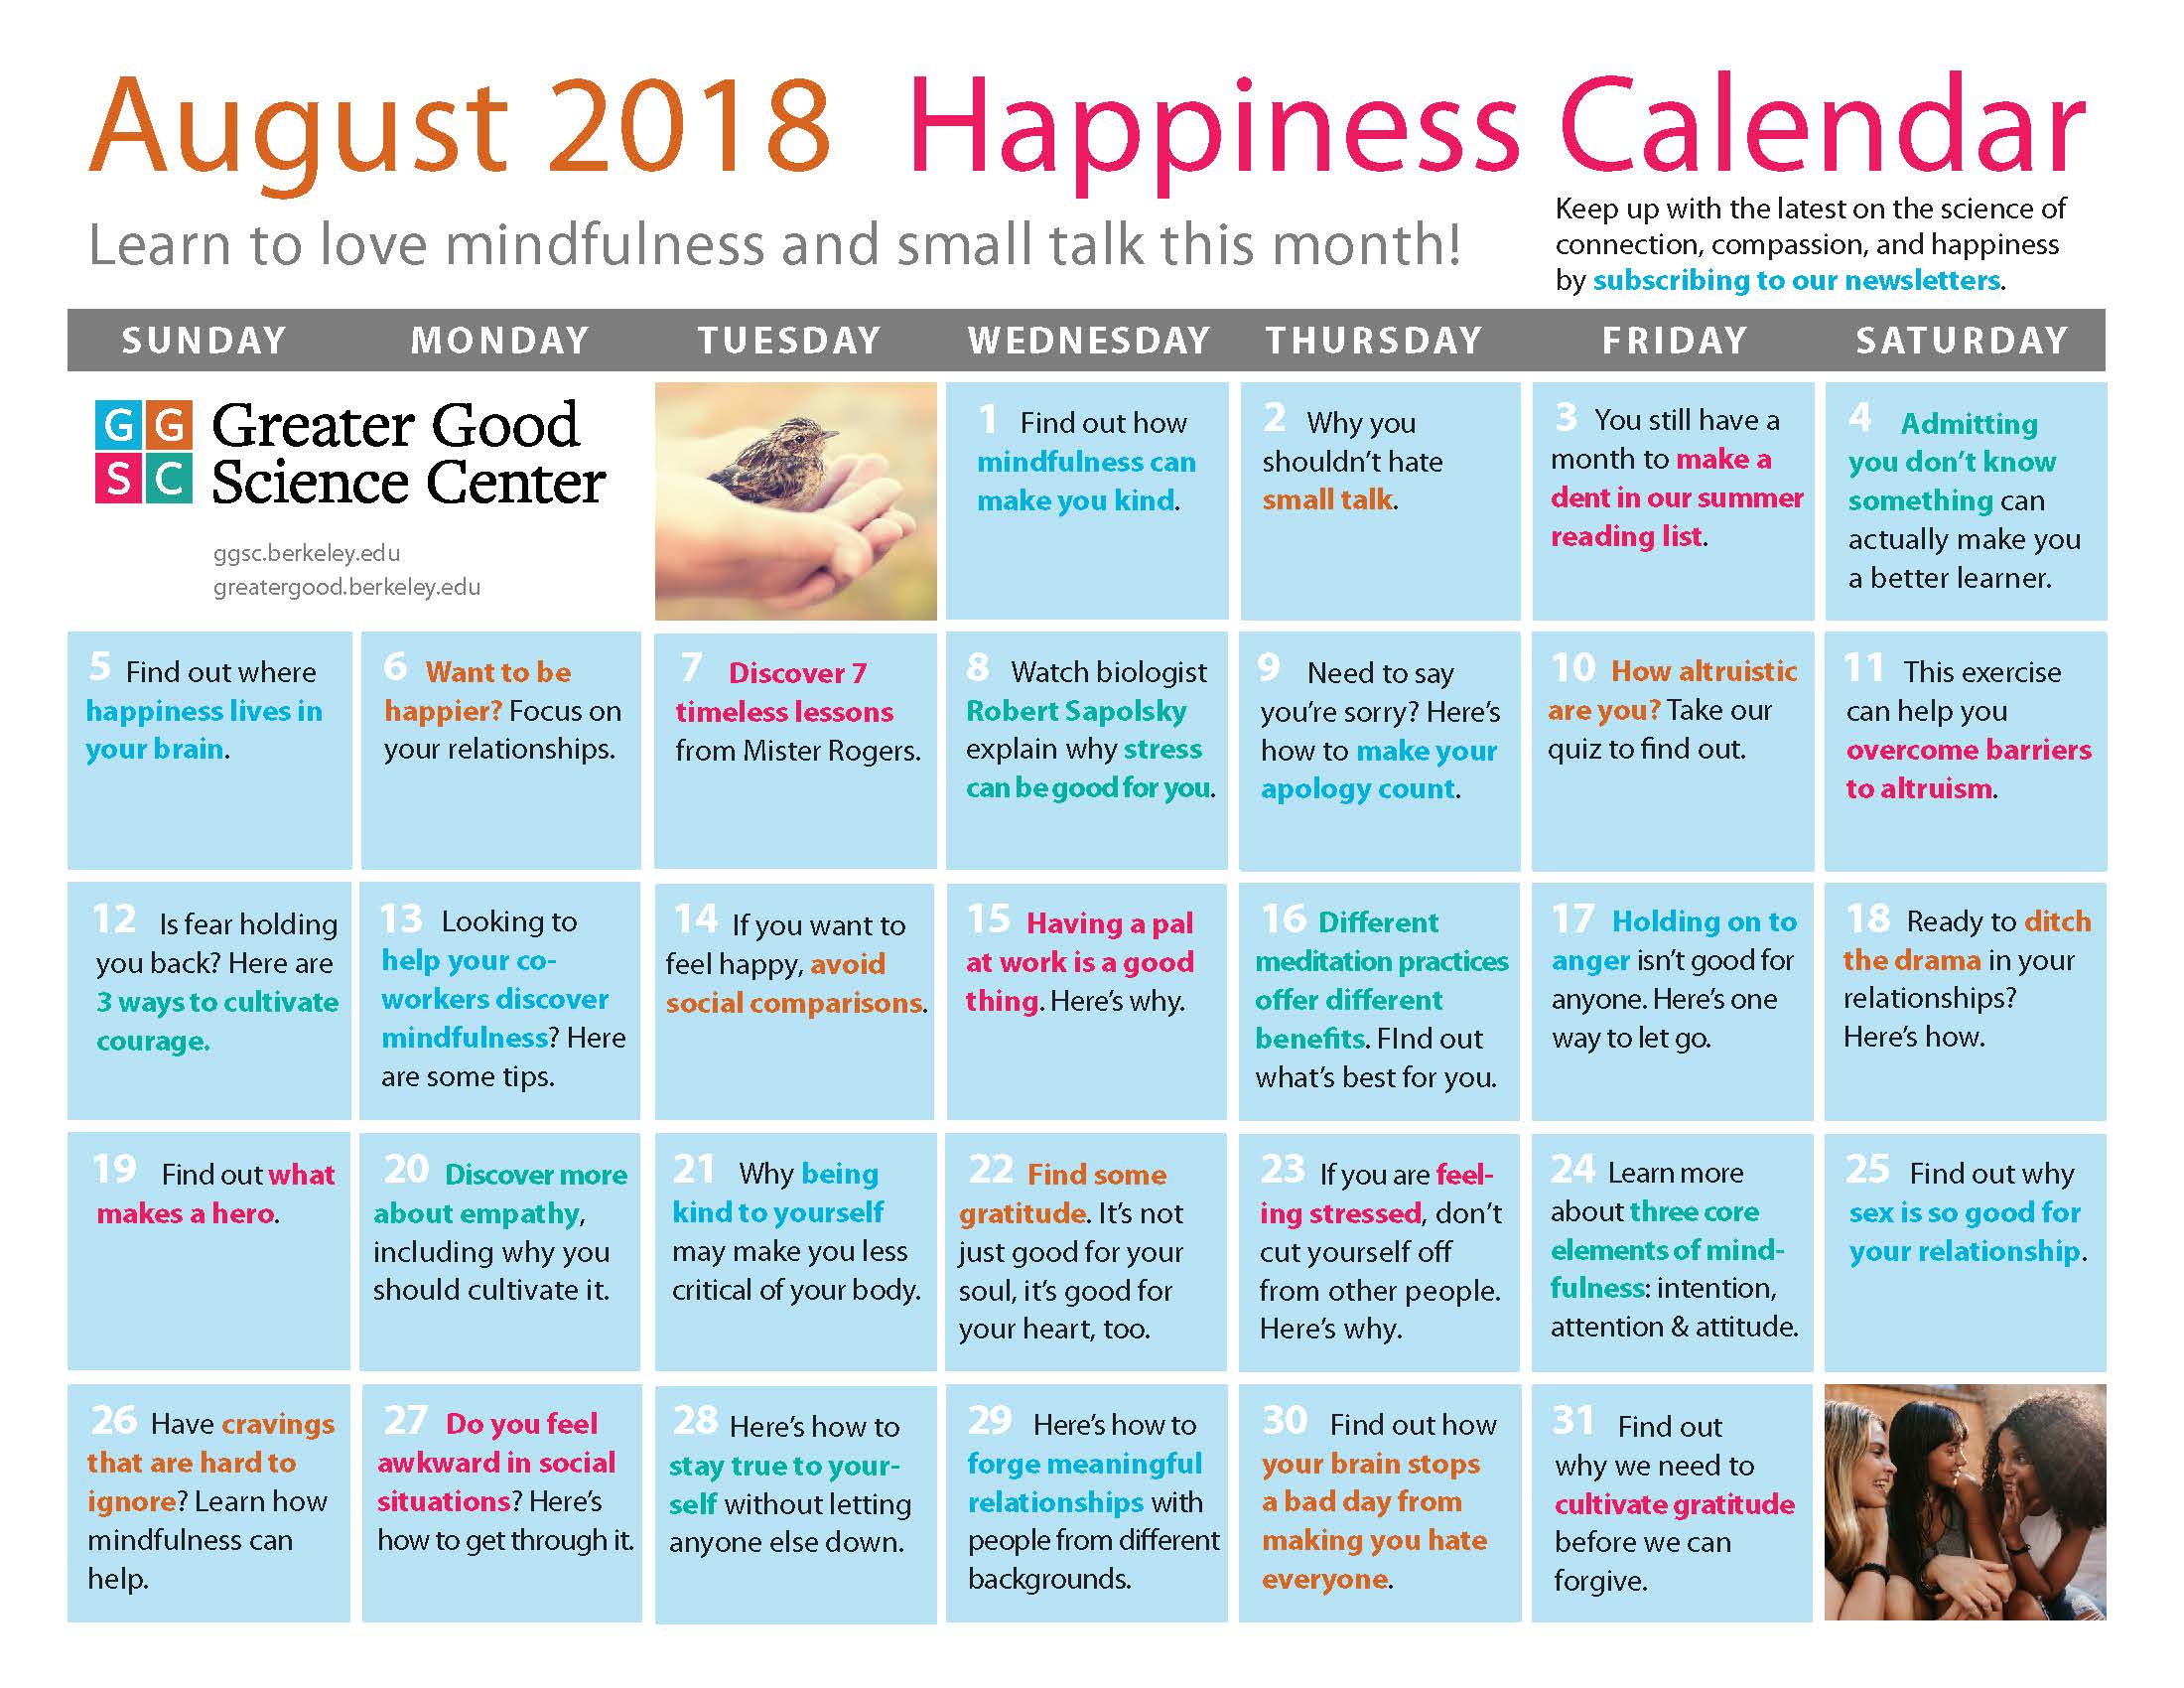 August Happiness Calendar